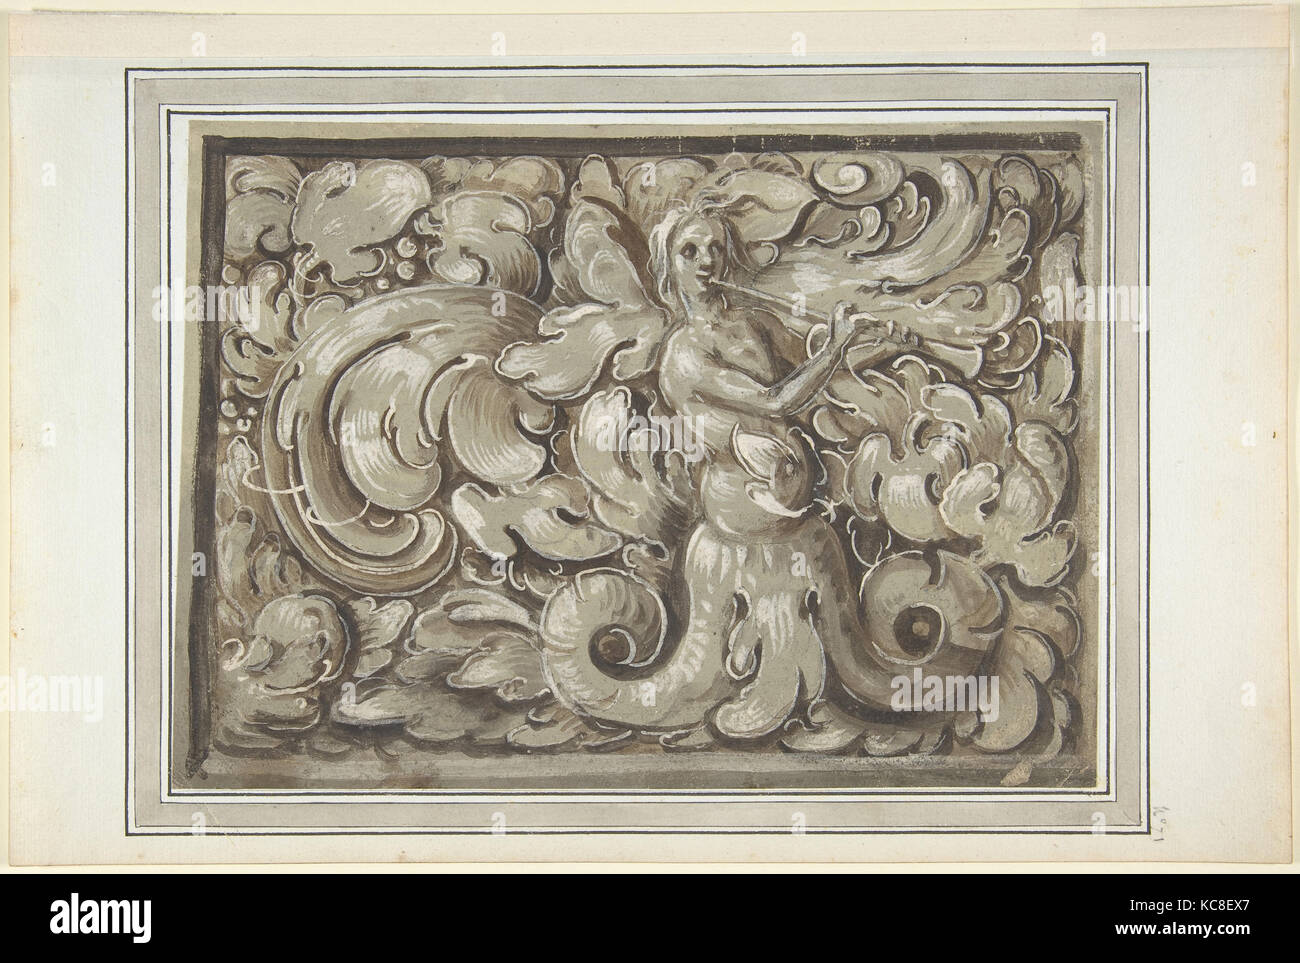 Nymphe de la lecture d'un avertisseur sonore (recto) ; support à la tête d'un homme (verso), allemand, Anonyme, 16e siècle Banque D'Images